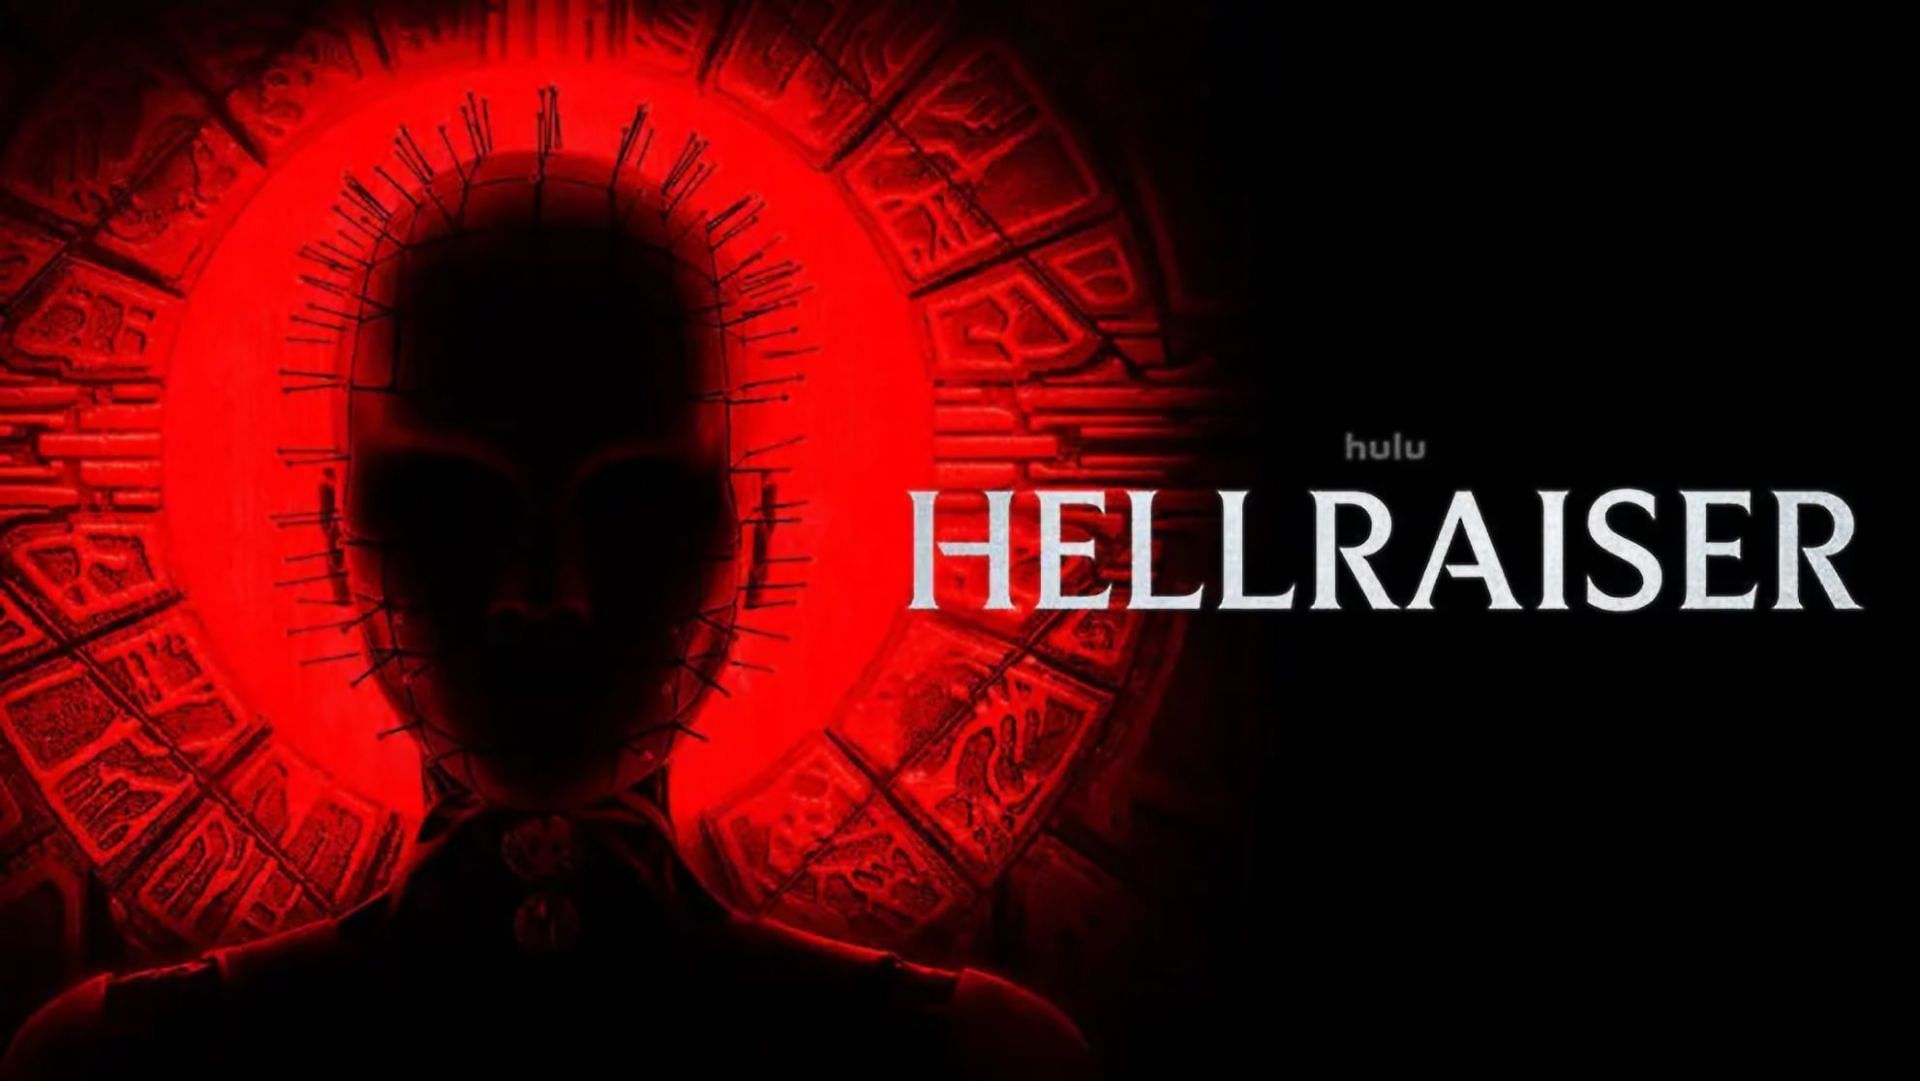 Hellraiser (Image via Hulu)